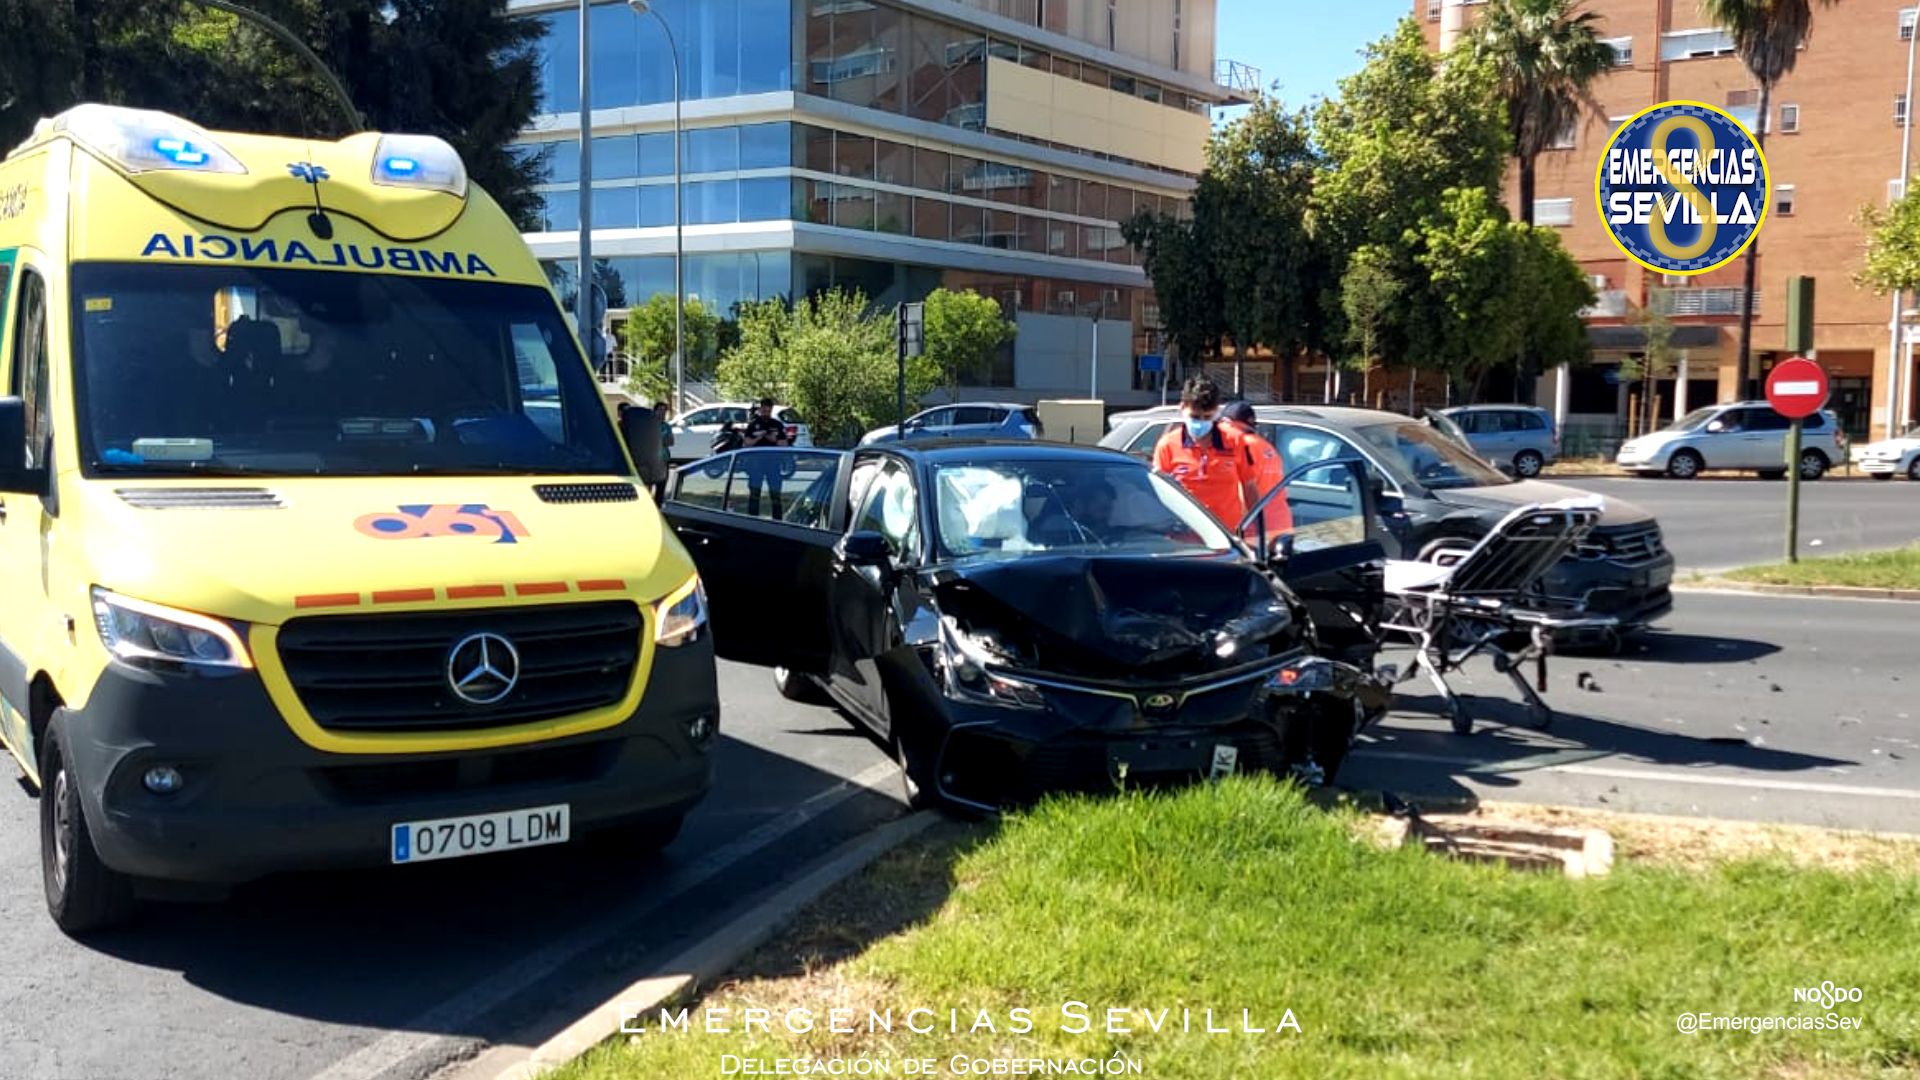 Una imagen del accidente que ha tenido lugar en la avenida Aeronáutica de Sevilla.